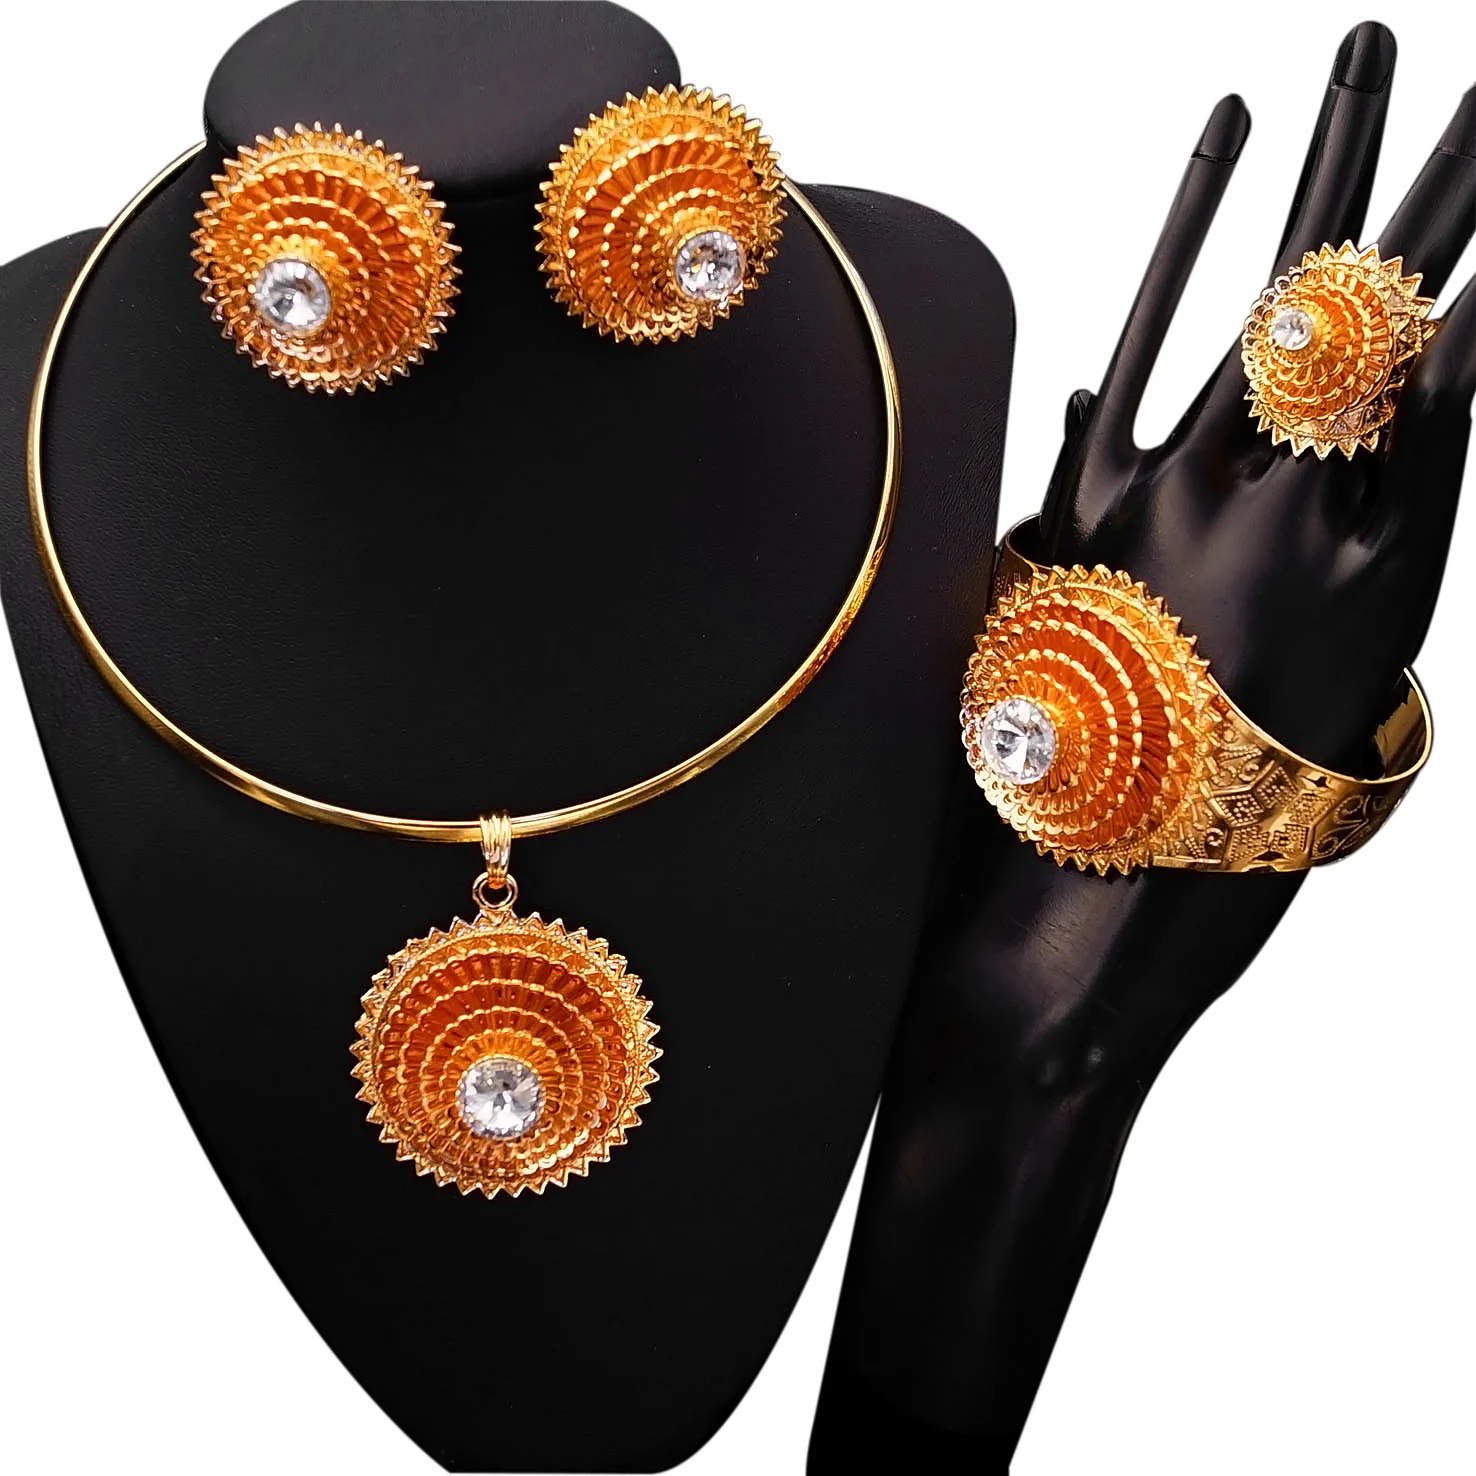 

Yulaili Romanian Gold Style Rhinestone Necklace Jewelry Sets Wholesale Fashion Gold Plated Women's Online Matching Jewelry Set